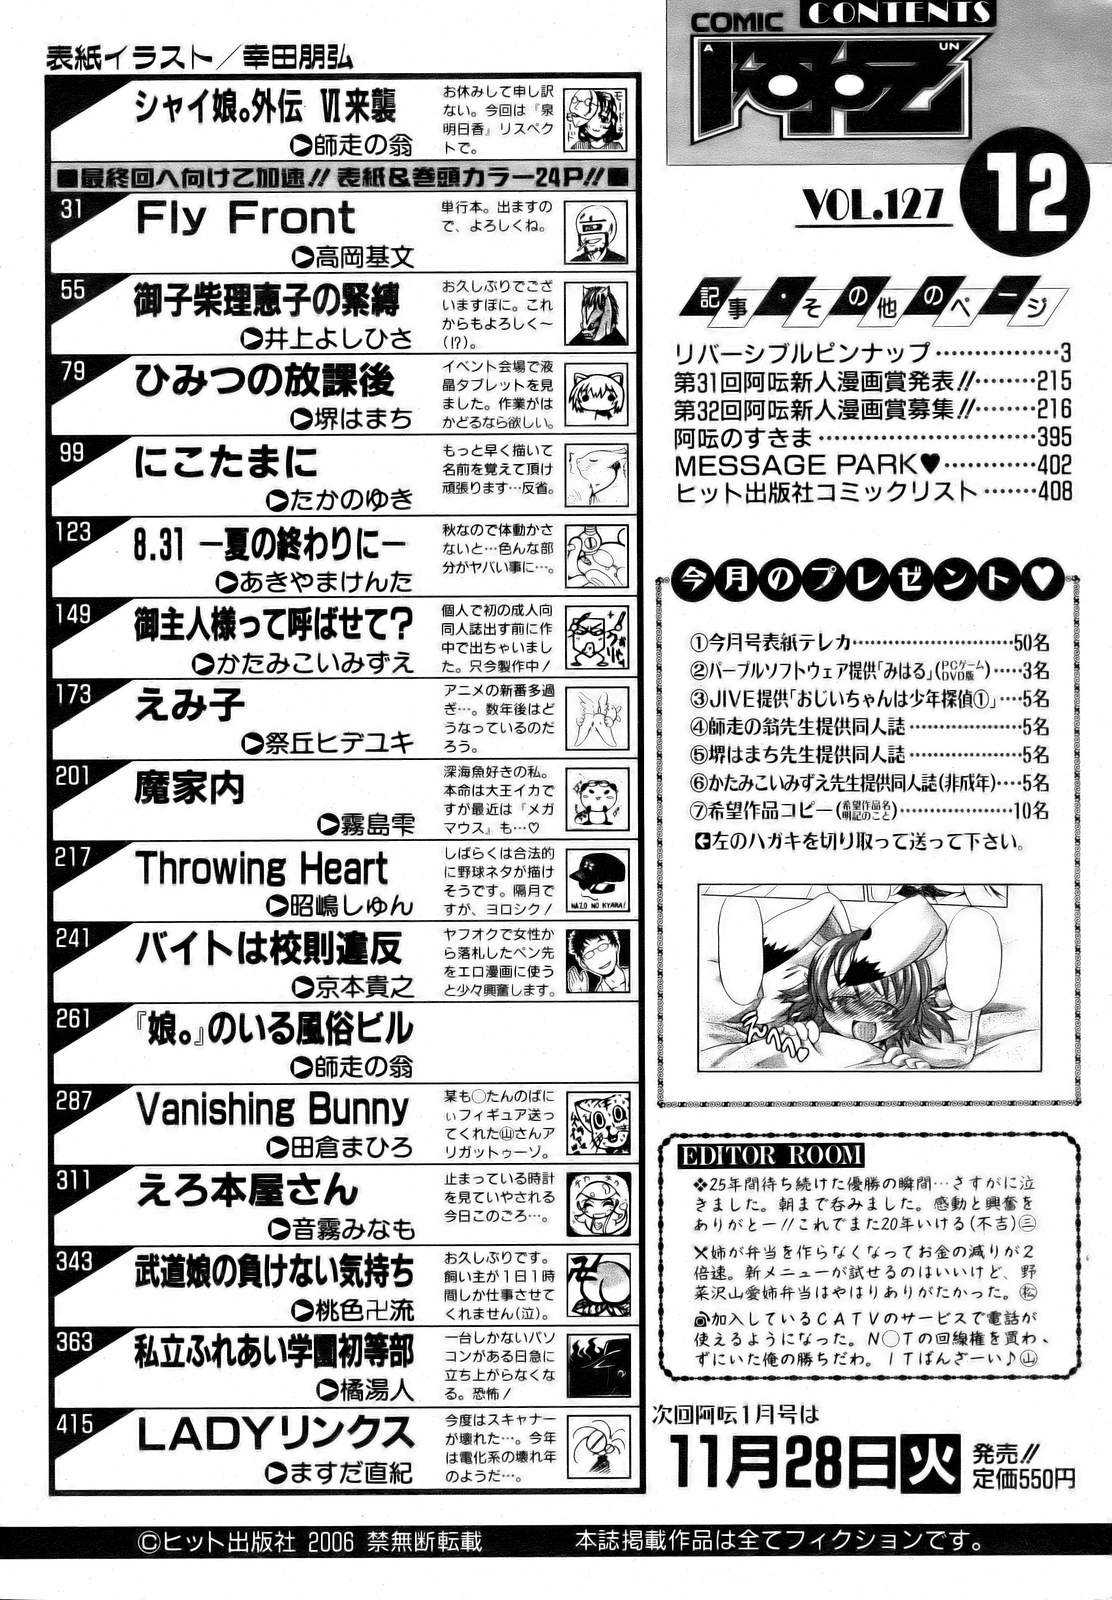 COMIC AUN 2006-12 Vol. 127 COMIC 阿吽 2006年12月号 VOL.127